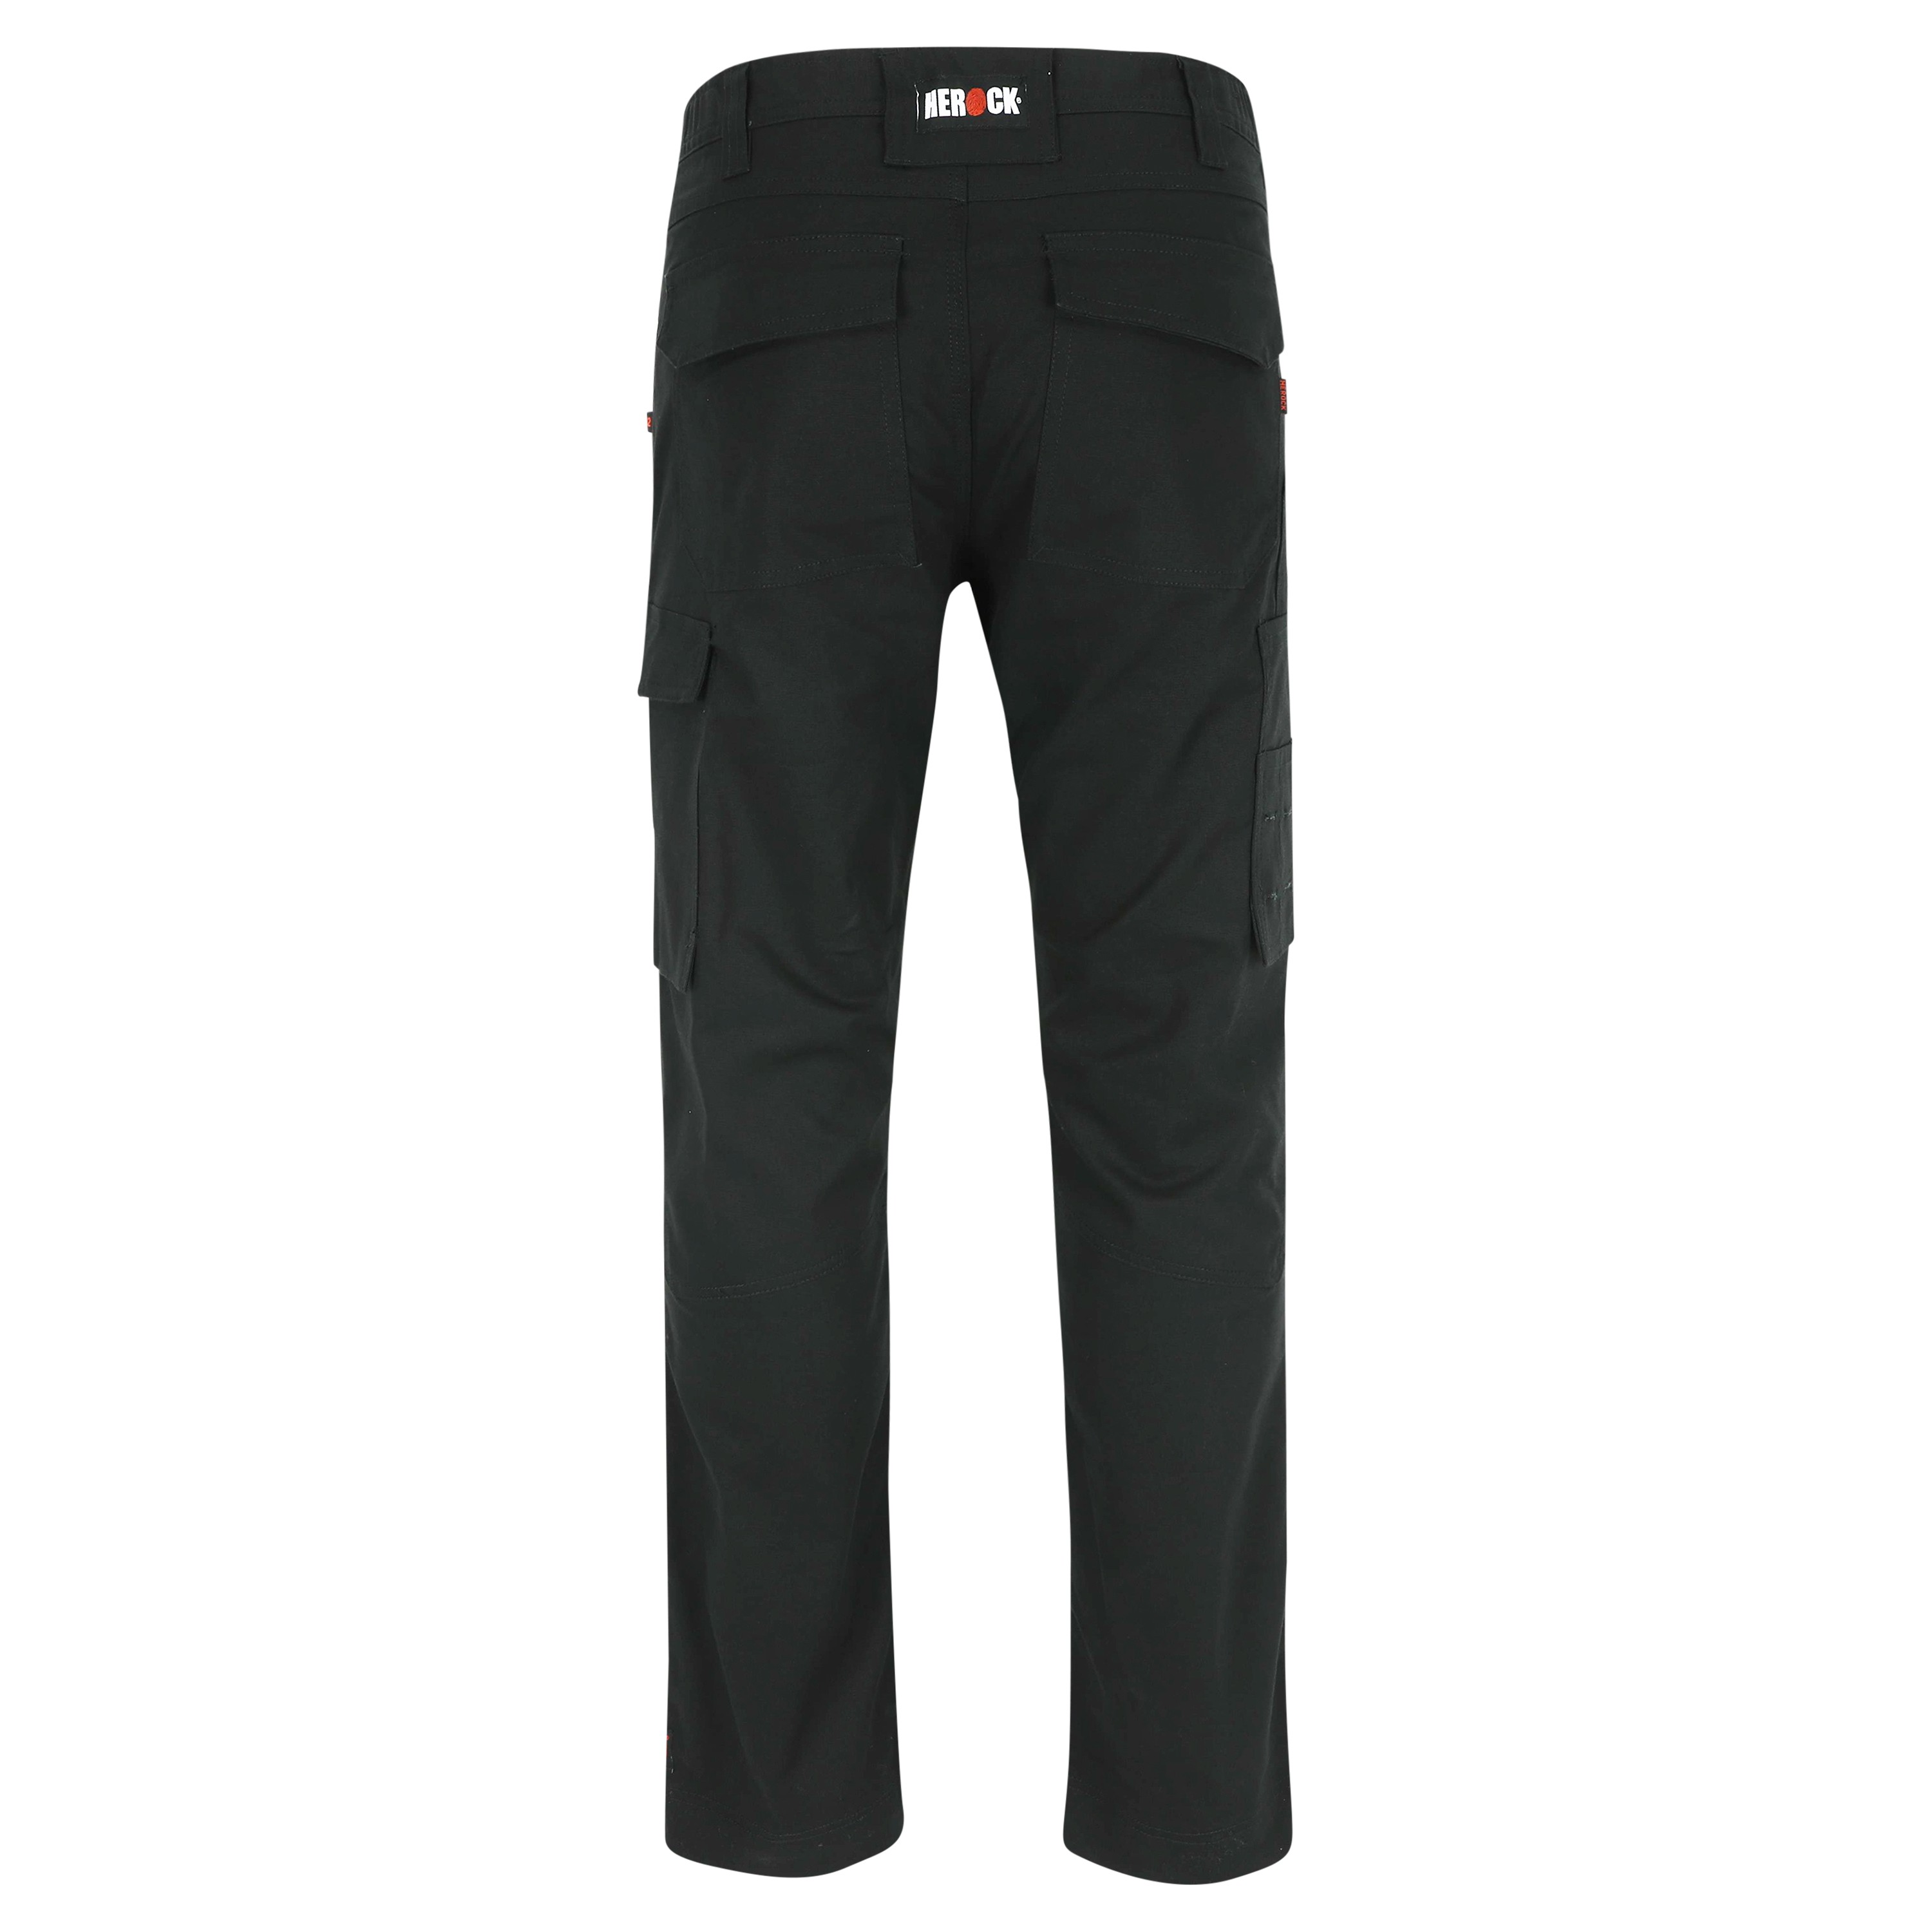 Pantalon travail extensible poches genoux Dero Herock noir vue 1 cotepro.fr